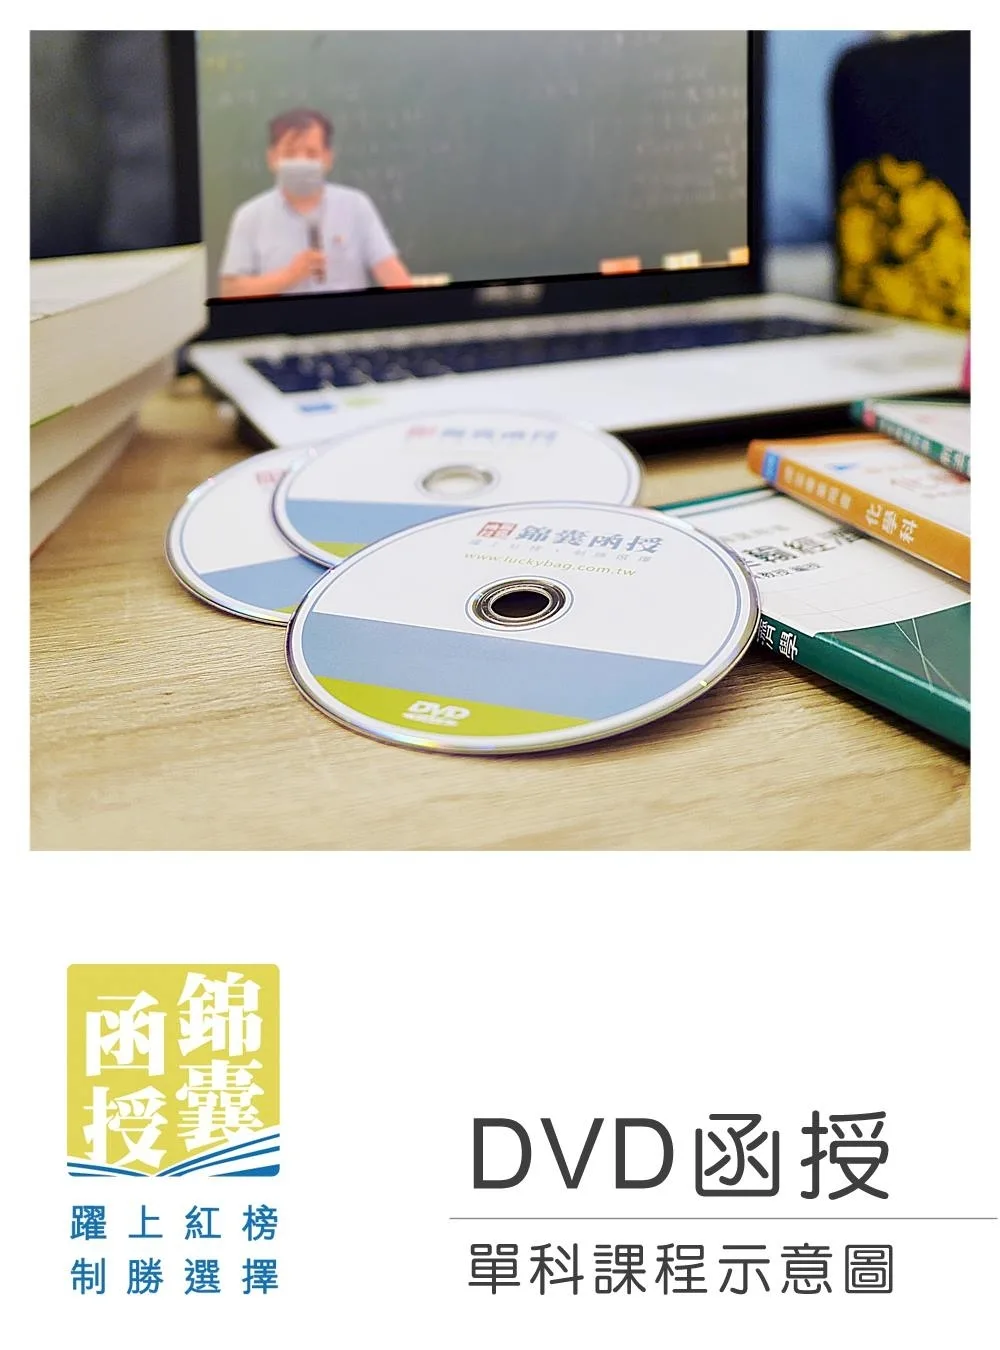 【DVD函授】運輸學�鐵路運輸學-單科課程(111版)